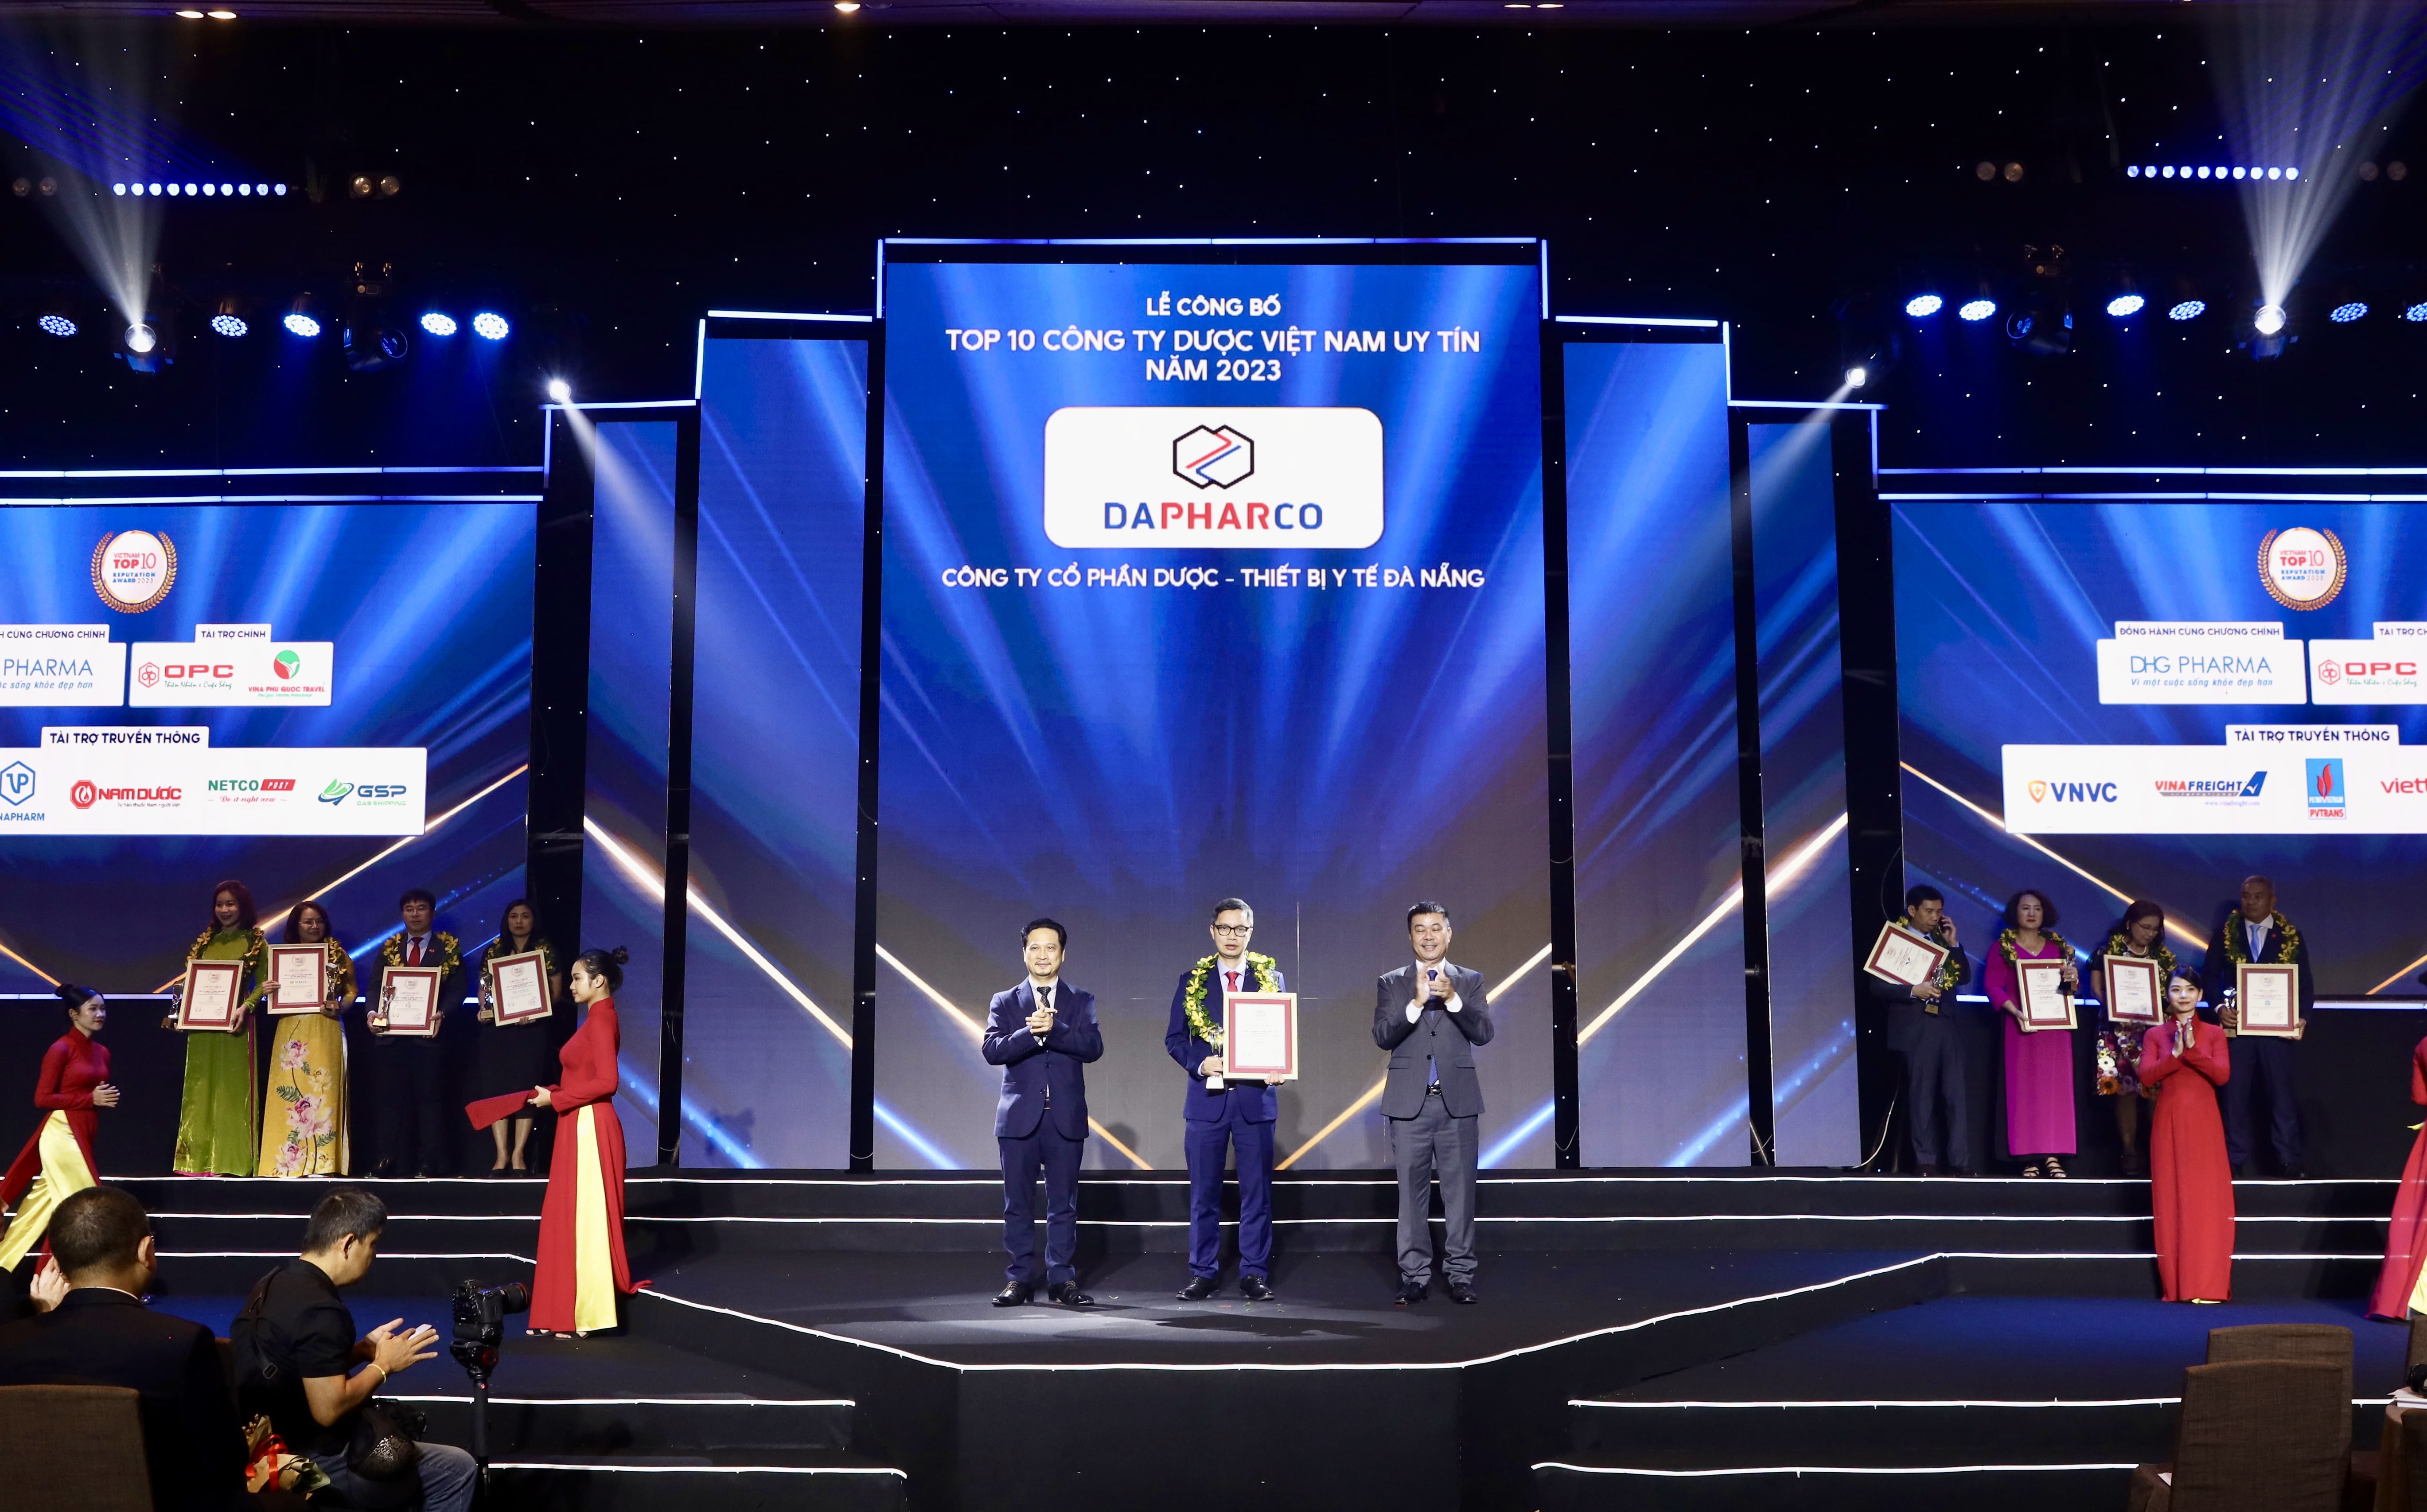 Chúc mừng Dapharco giữ vững danh hiệu Top 10 Công ty Dược Việt Nam uy tín trong suốt 8 năm liên tiếp